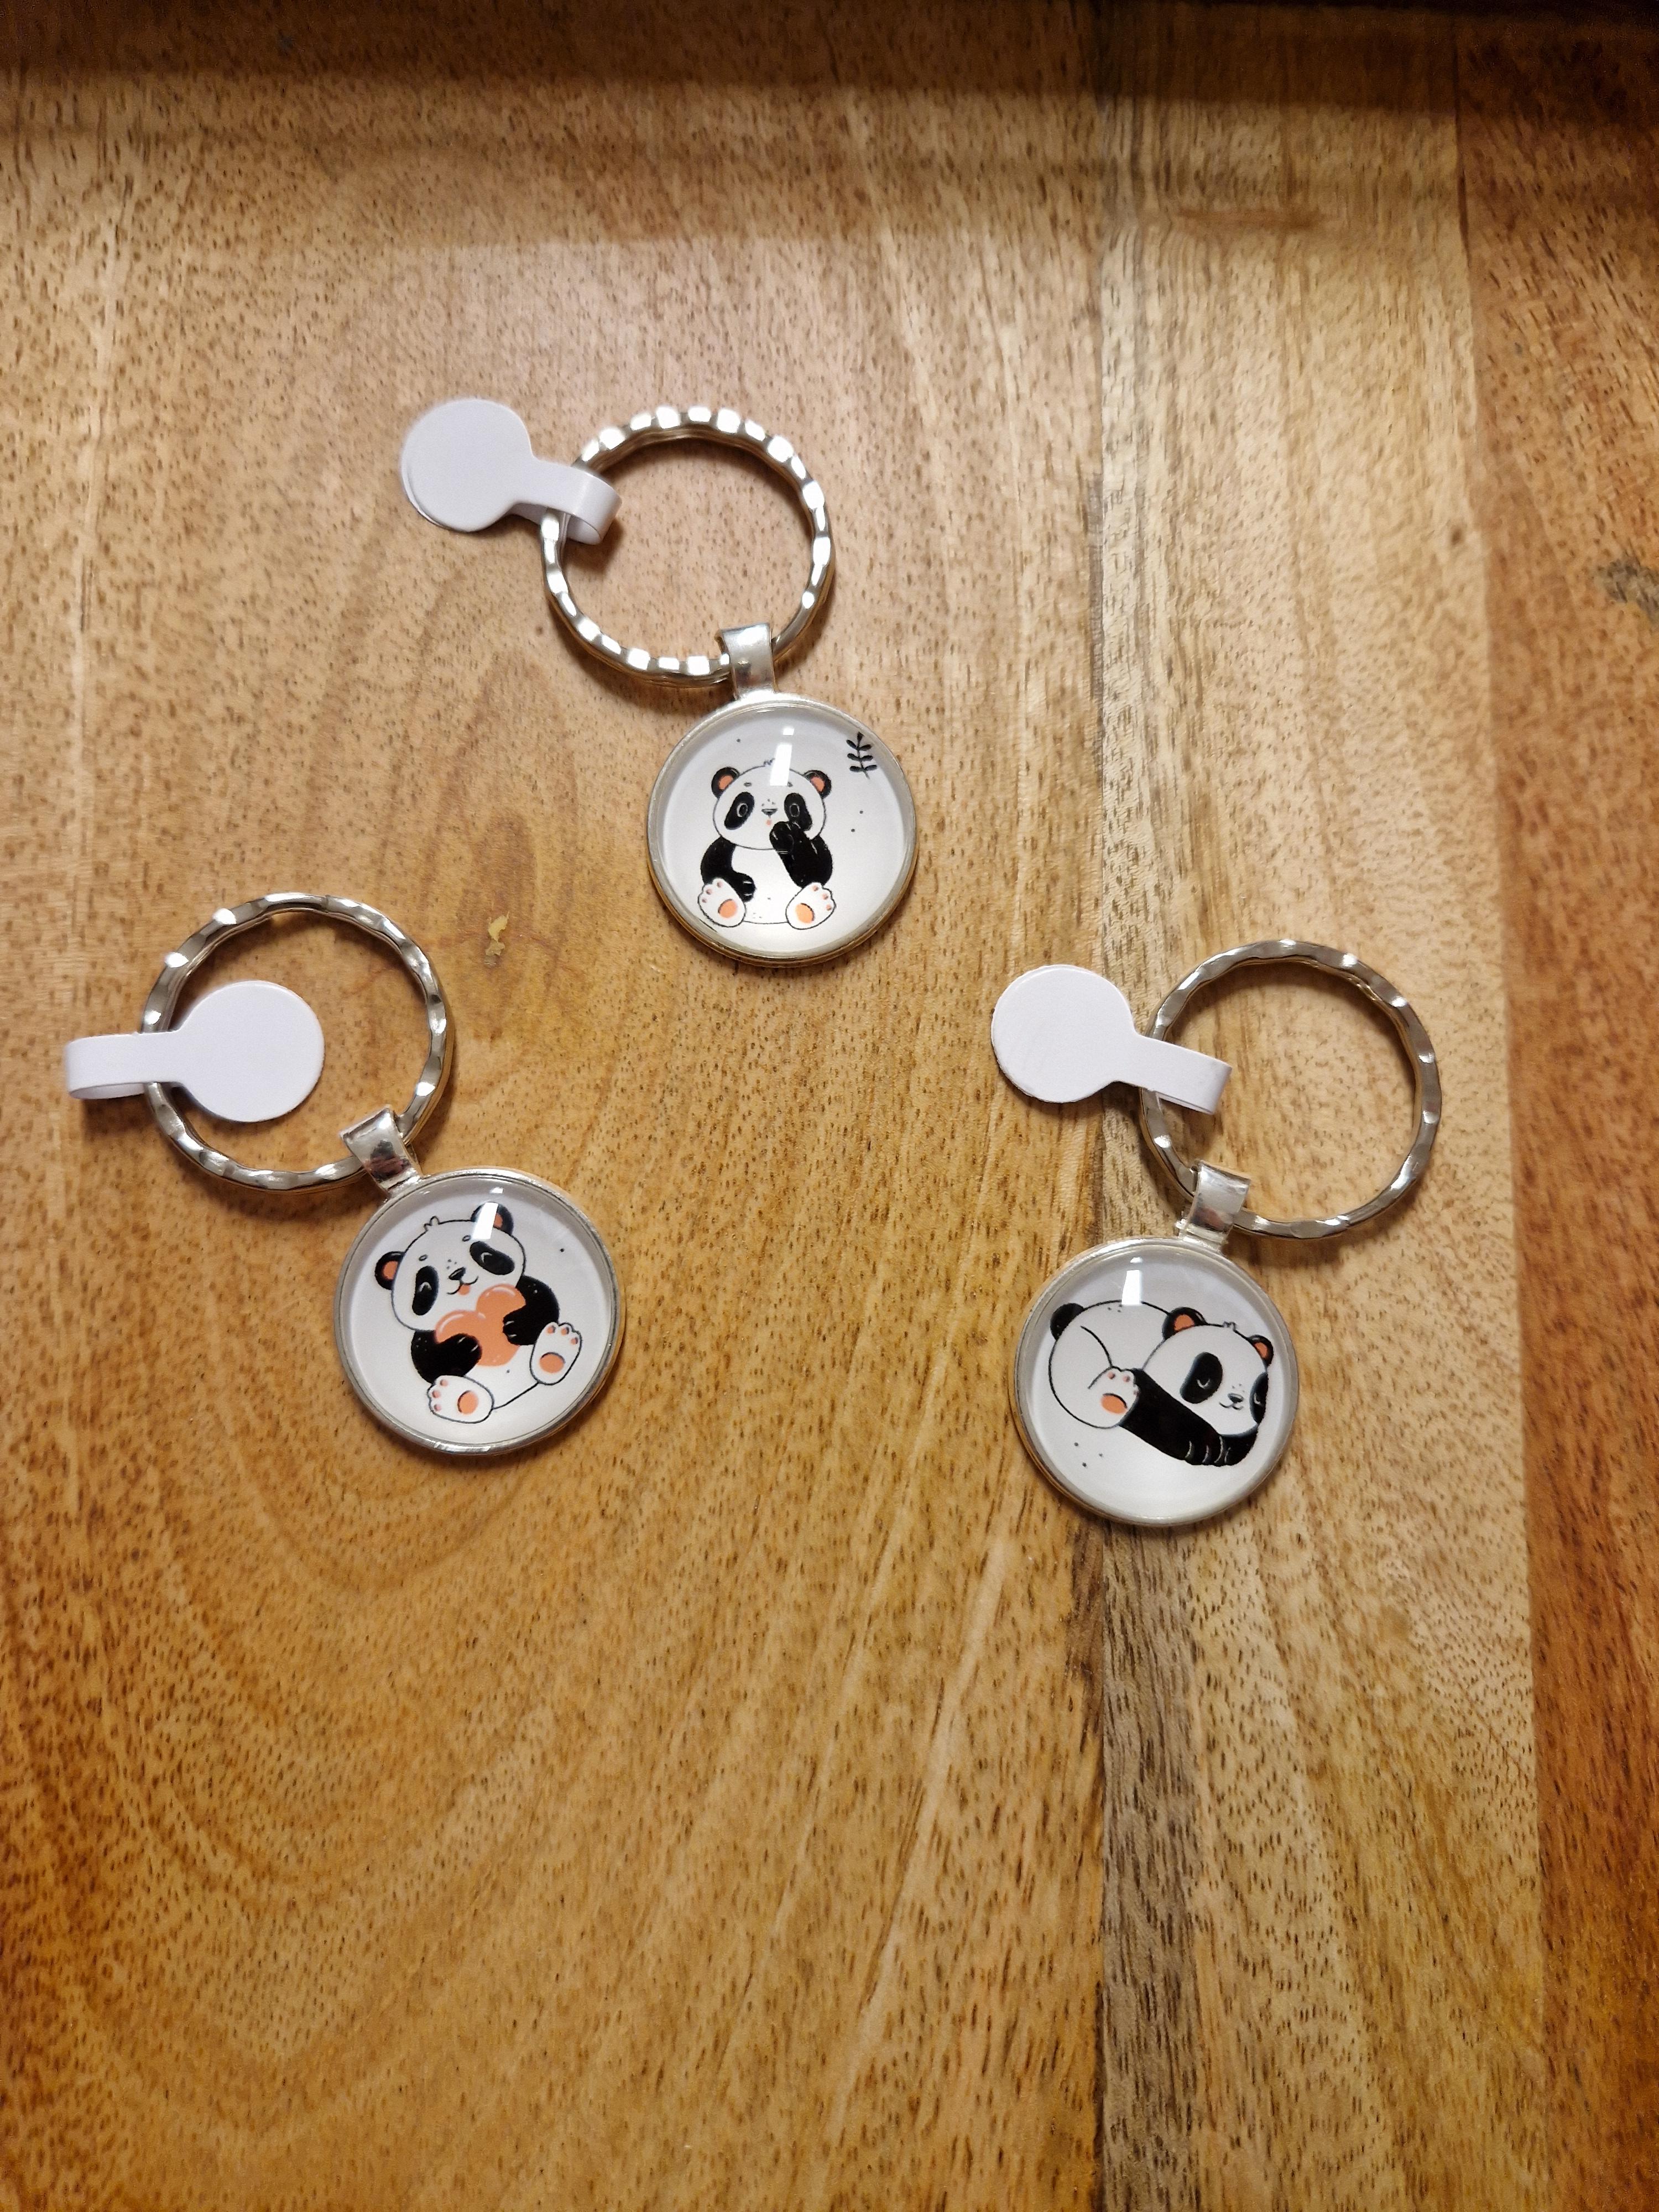 Schlüssel-Anhänger "El osito panda", 1 Stk.